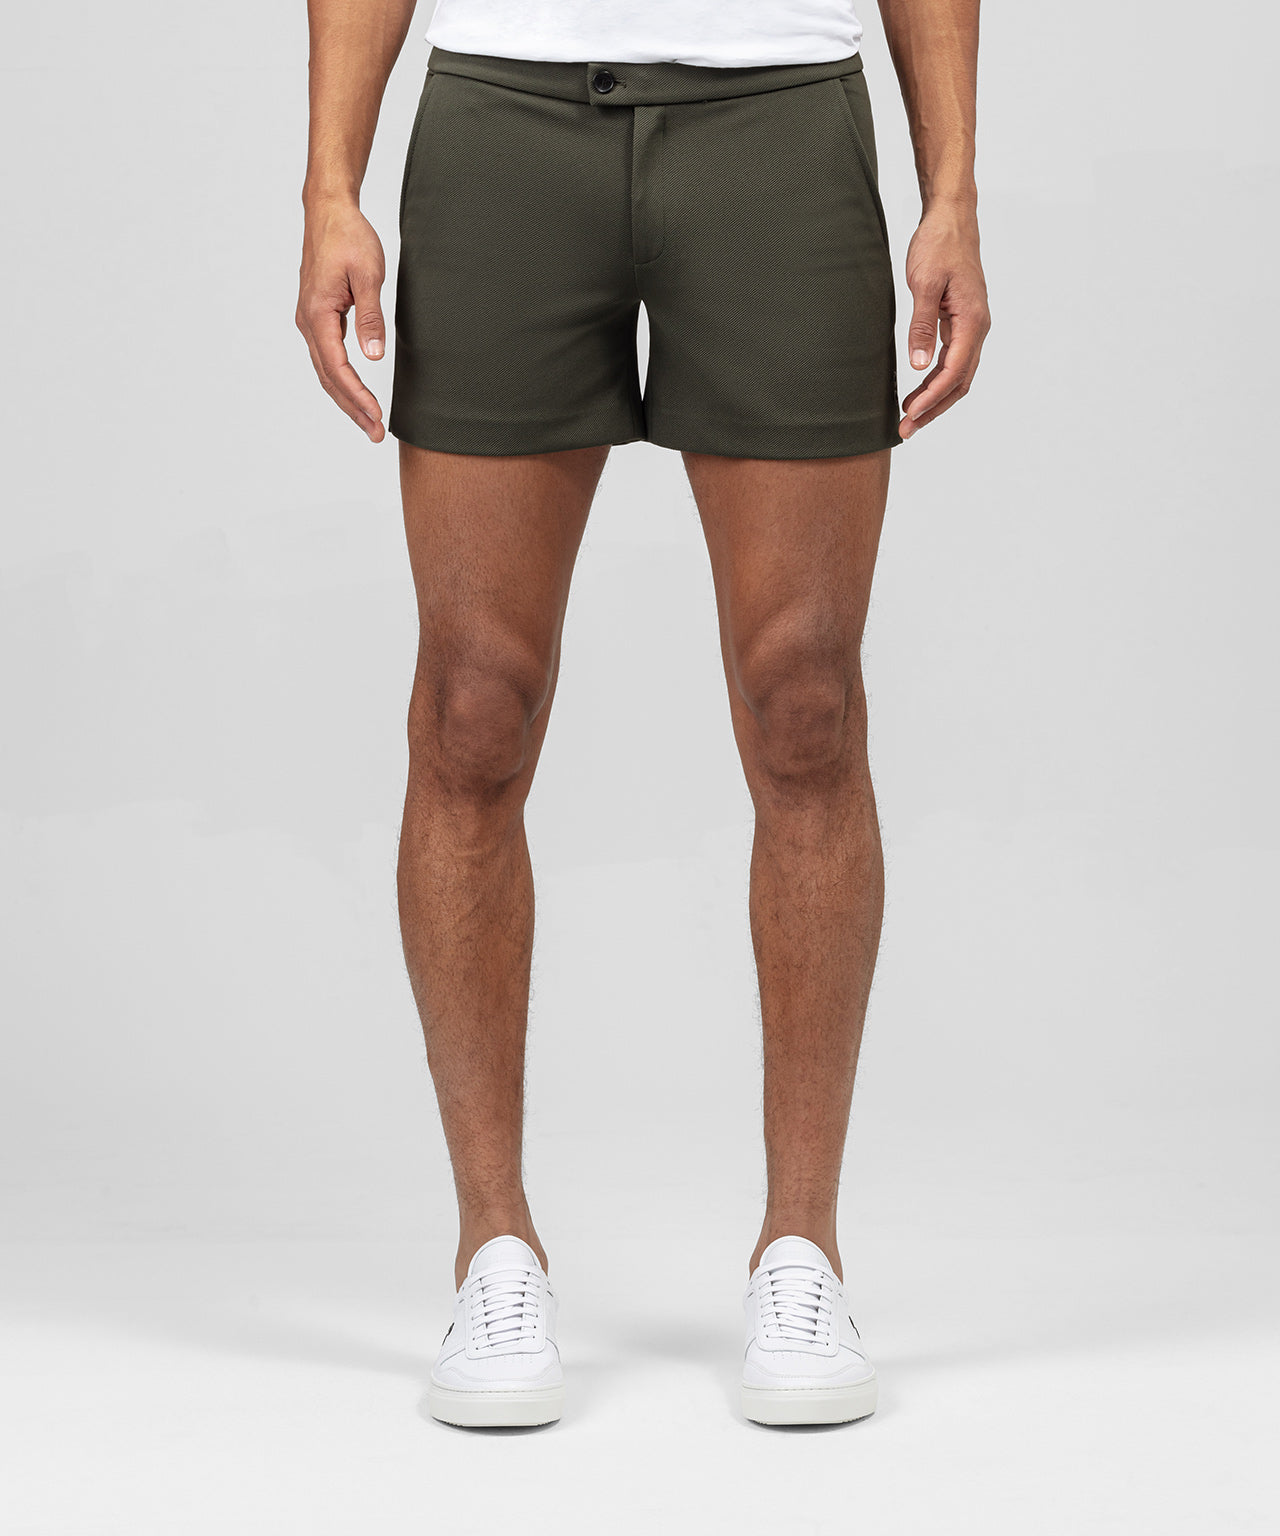 Tennis Shorts: Khaki